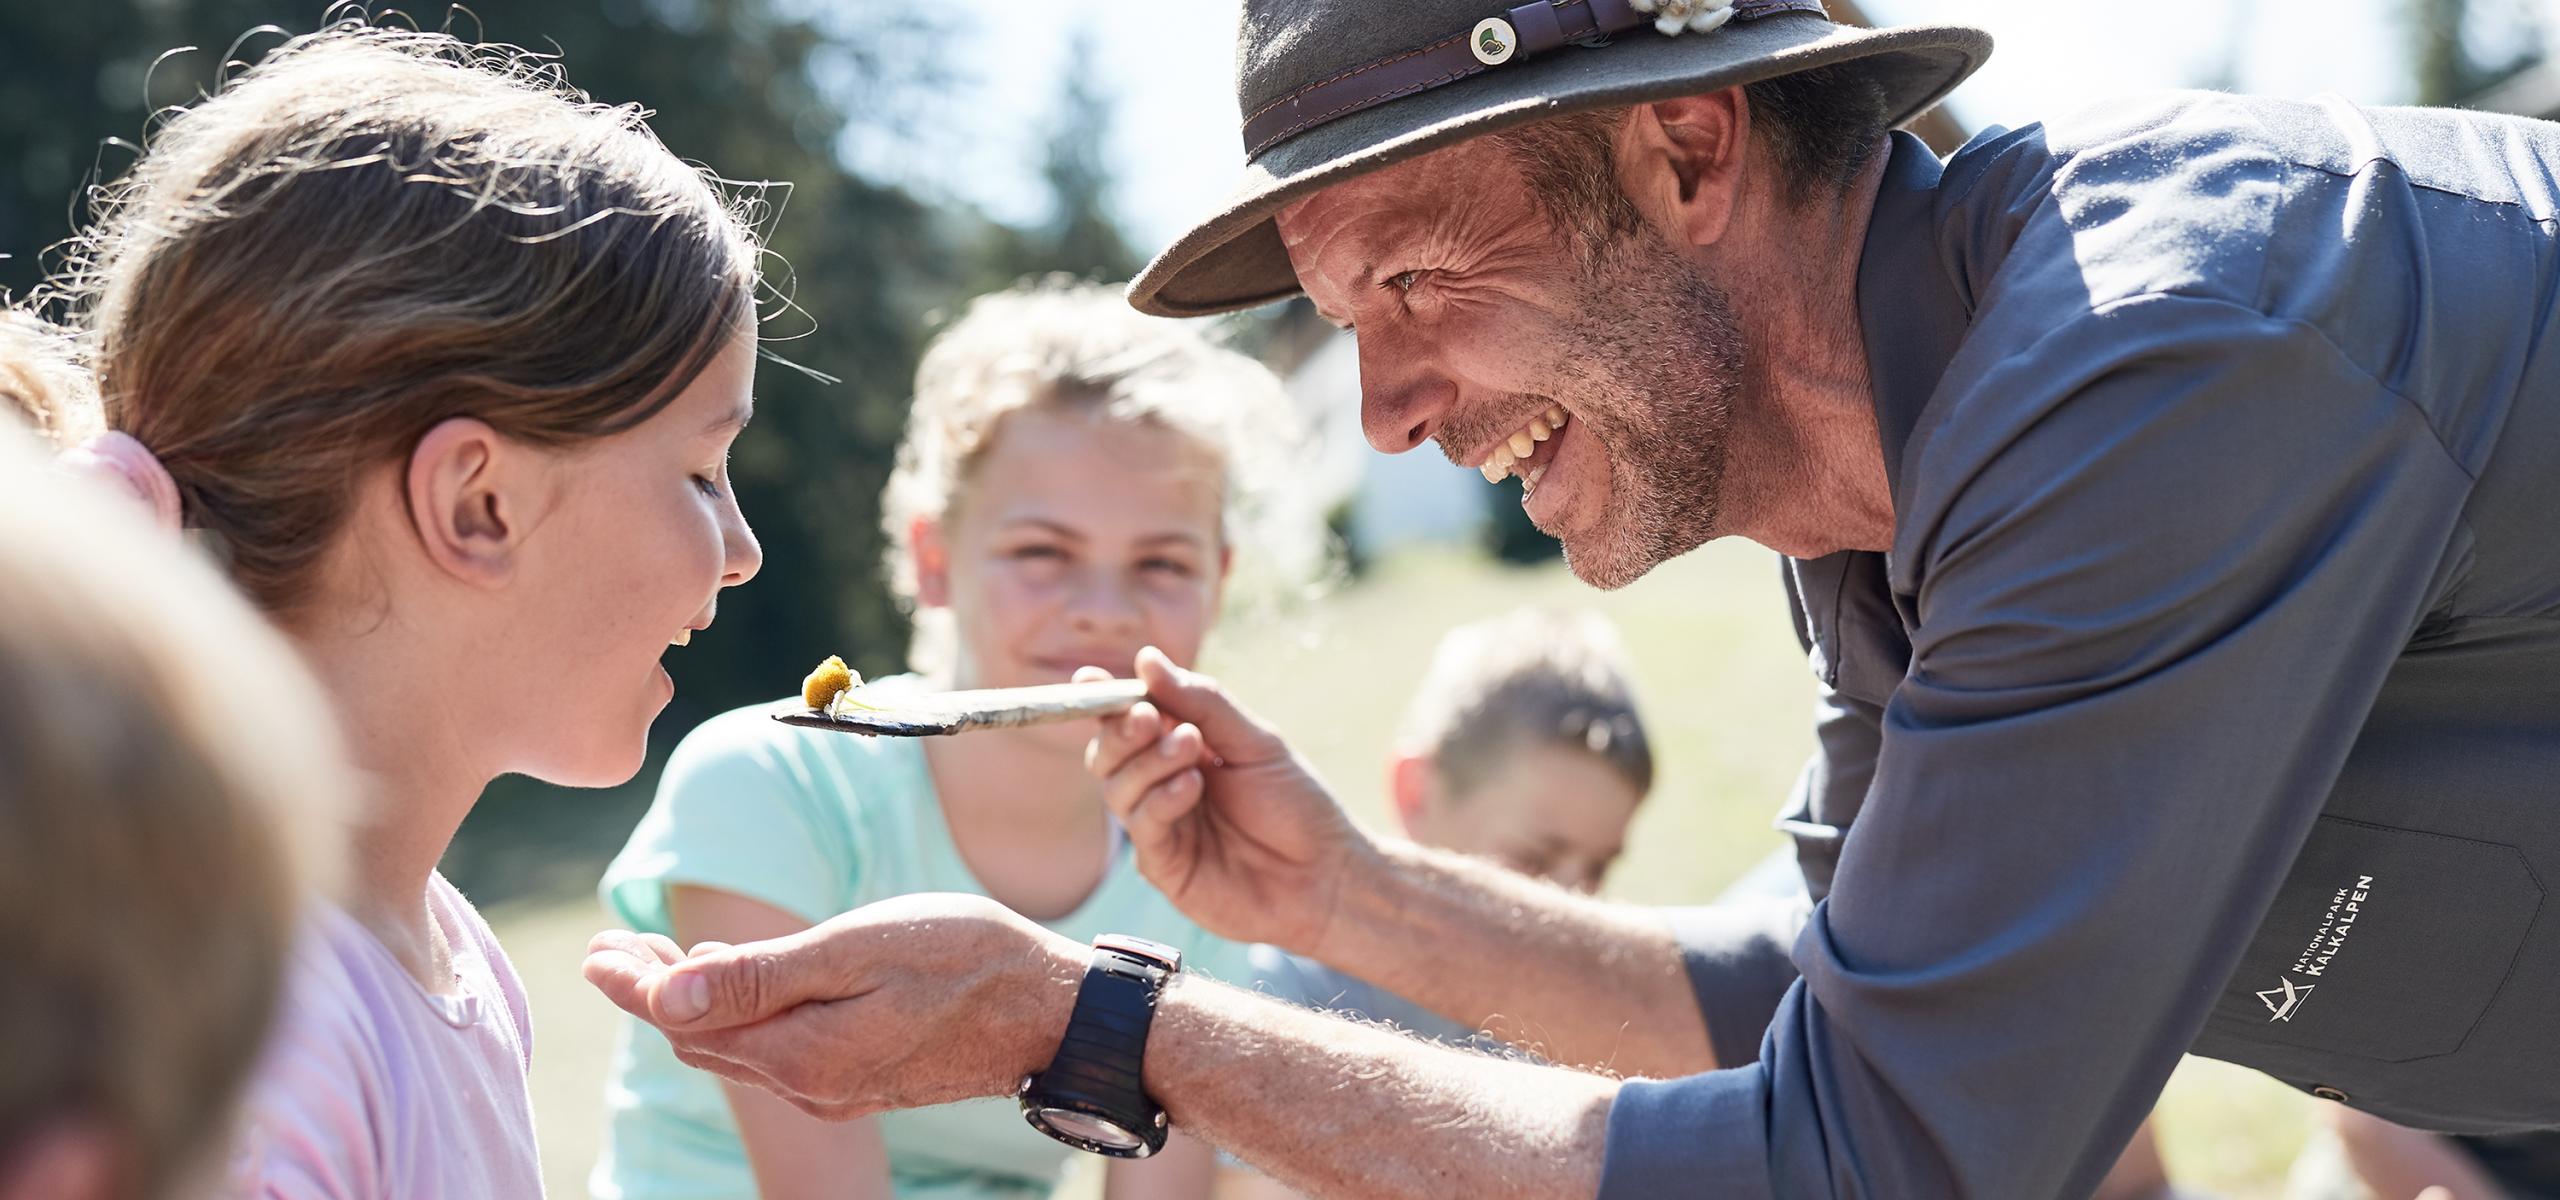 Nationalpark Ranger reicht einem Mädchen Essen auf einem Holzlöffel